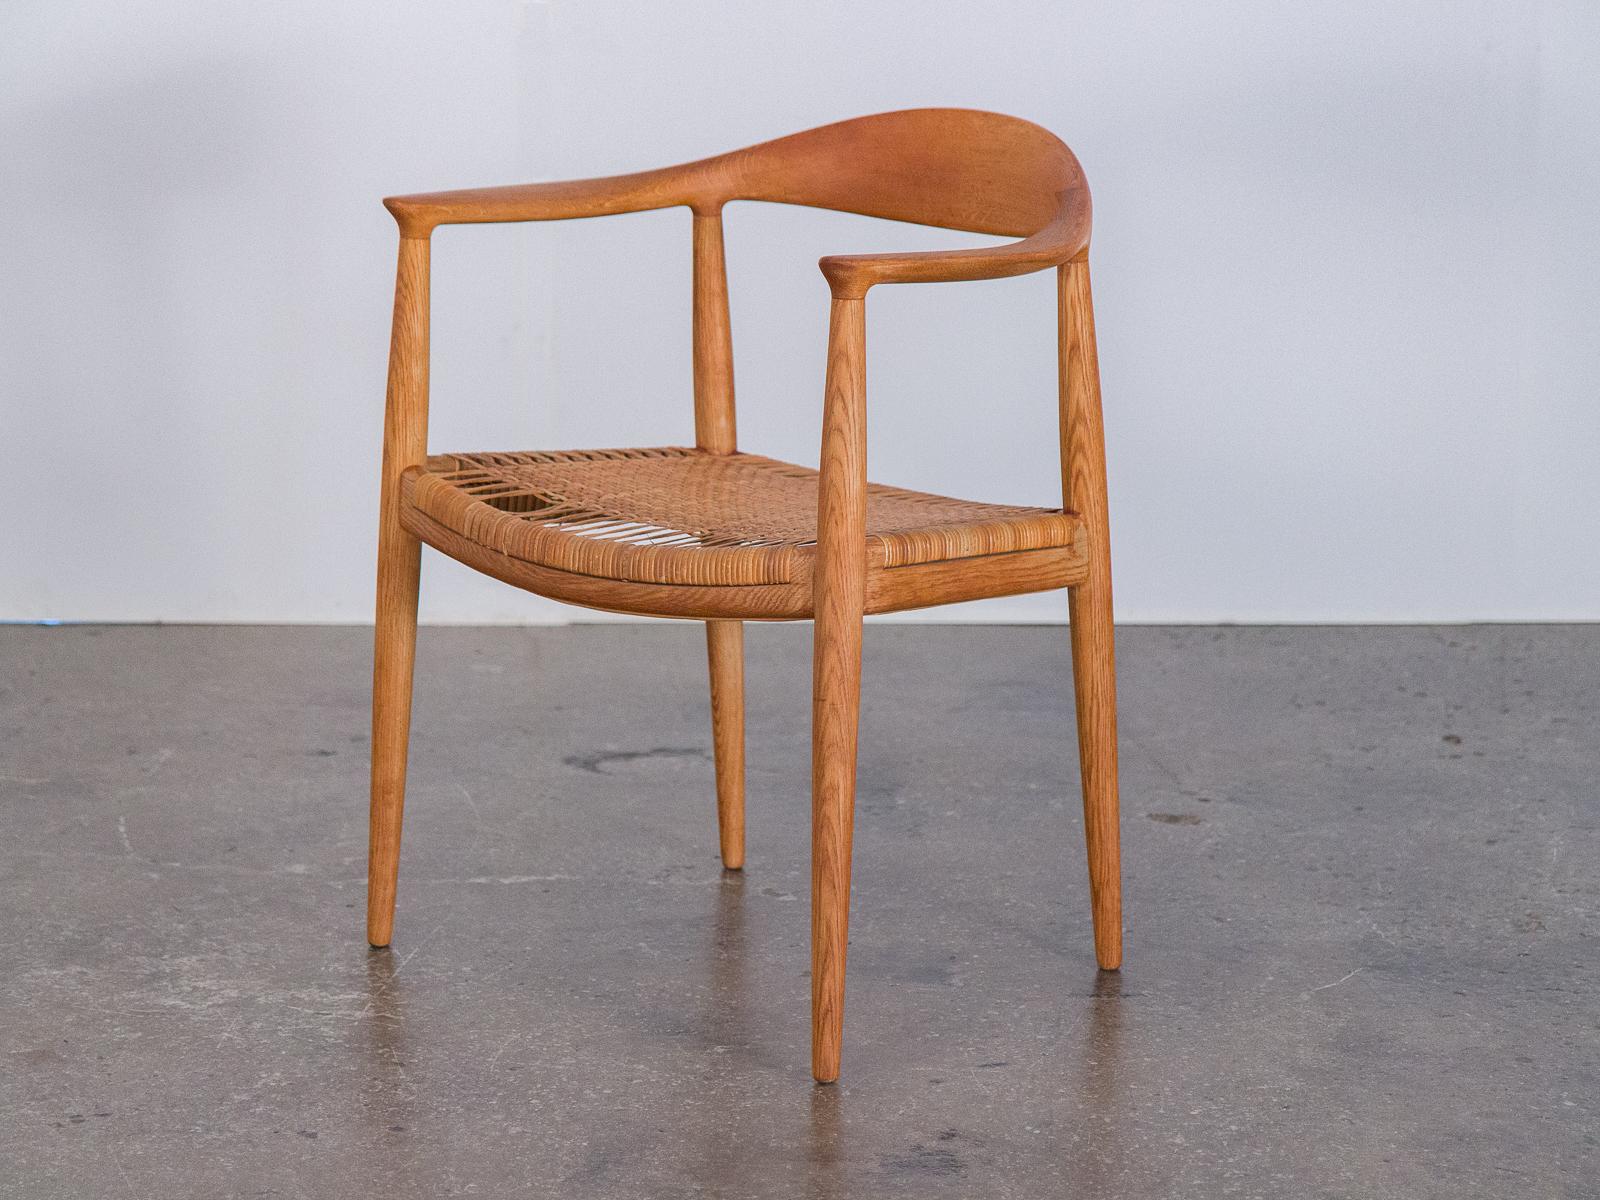 Ensemble de dix chaises de salle à manger rondes assorties, modèle JH-501, avec assise en rotin, conçues par Hans J. Wegner pour Johannes Hansen, Danemark. Ce design iconique est surtout connu sous le nom de 